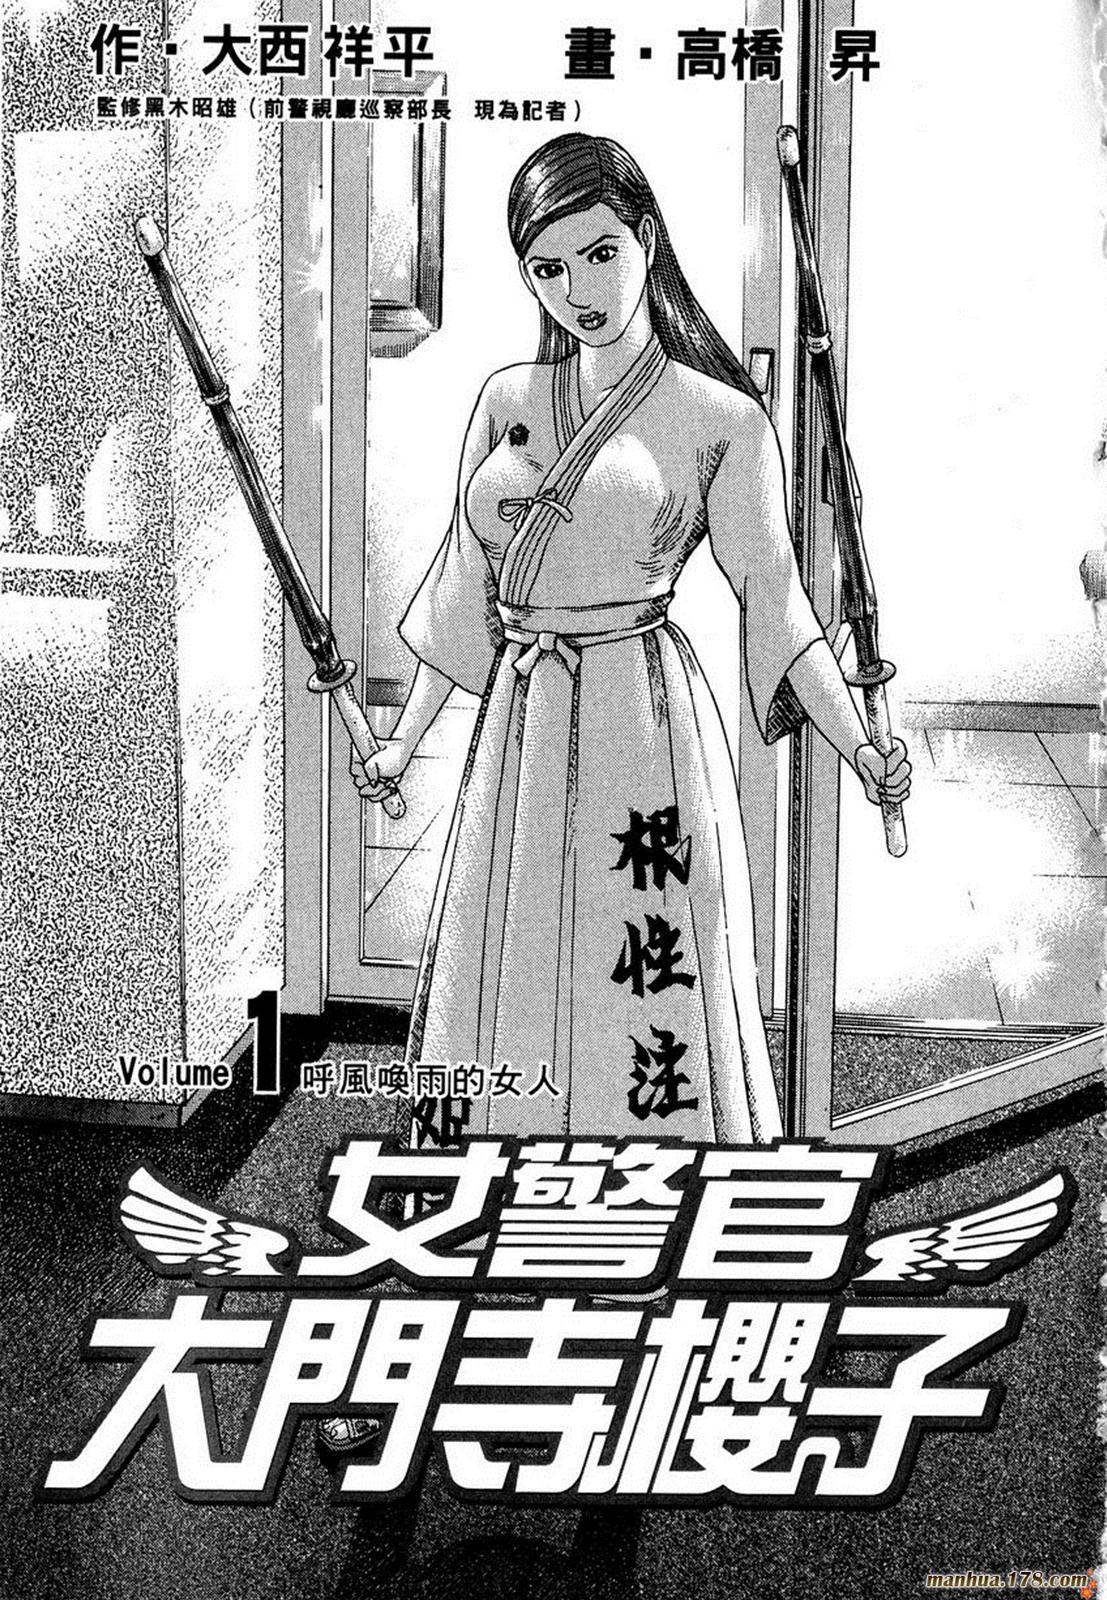 女警官大門寺櫻子 第01卷 漫畫線上看 動漫戲說 Acgn Cc